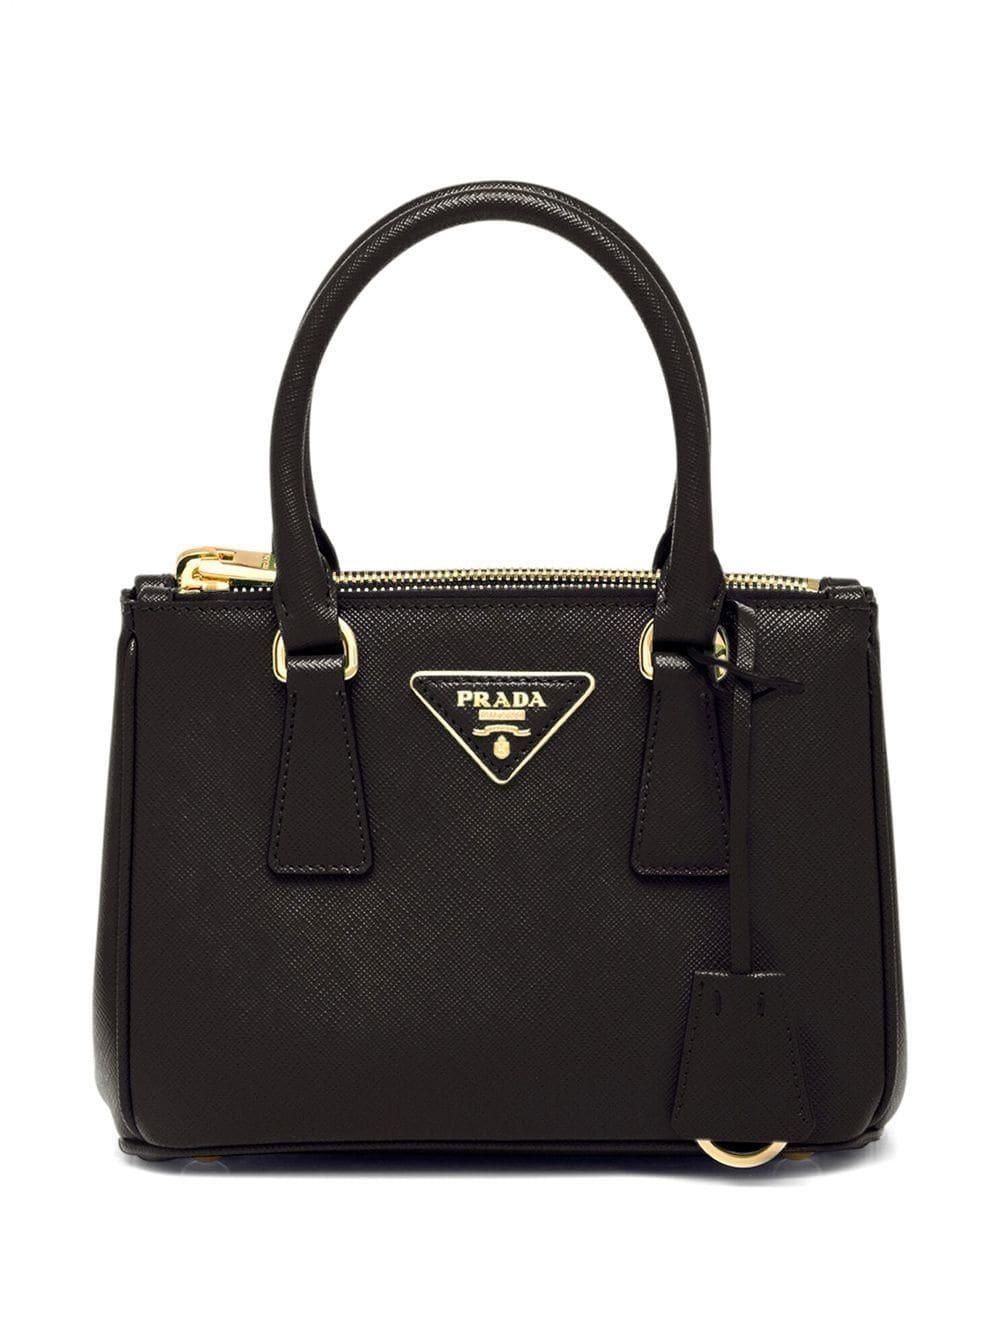 Authentic Prada Galleria Saffiano Leather Bag - Excellent Condition